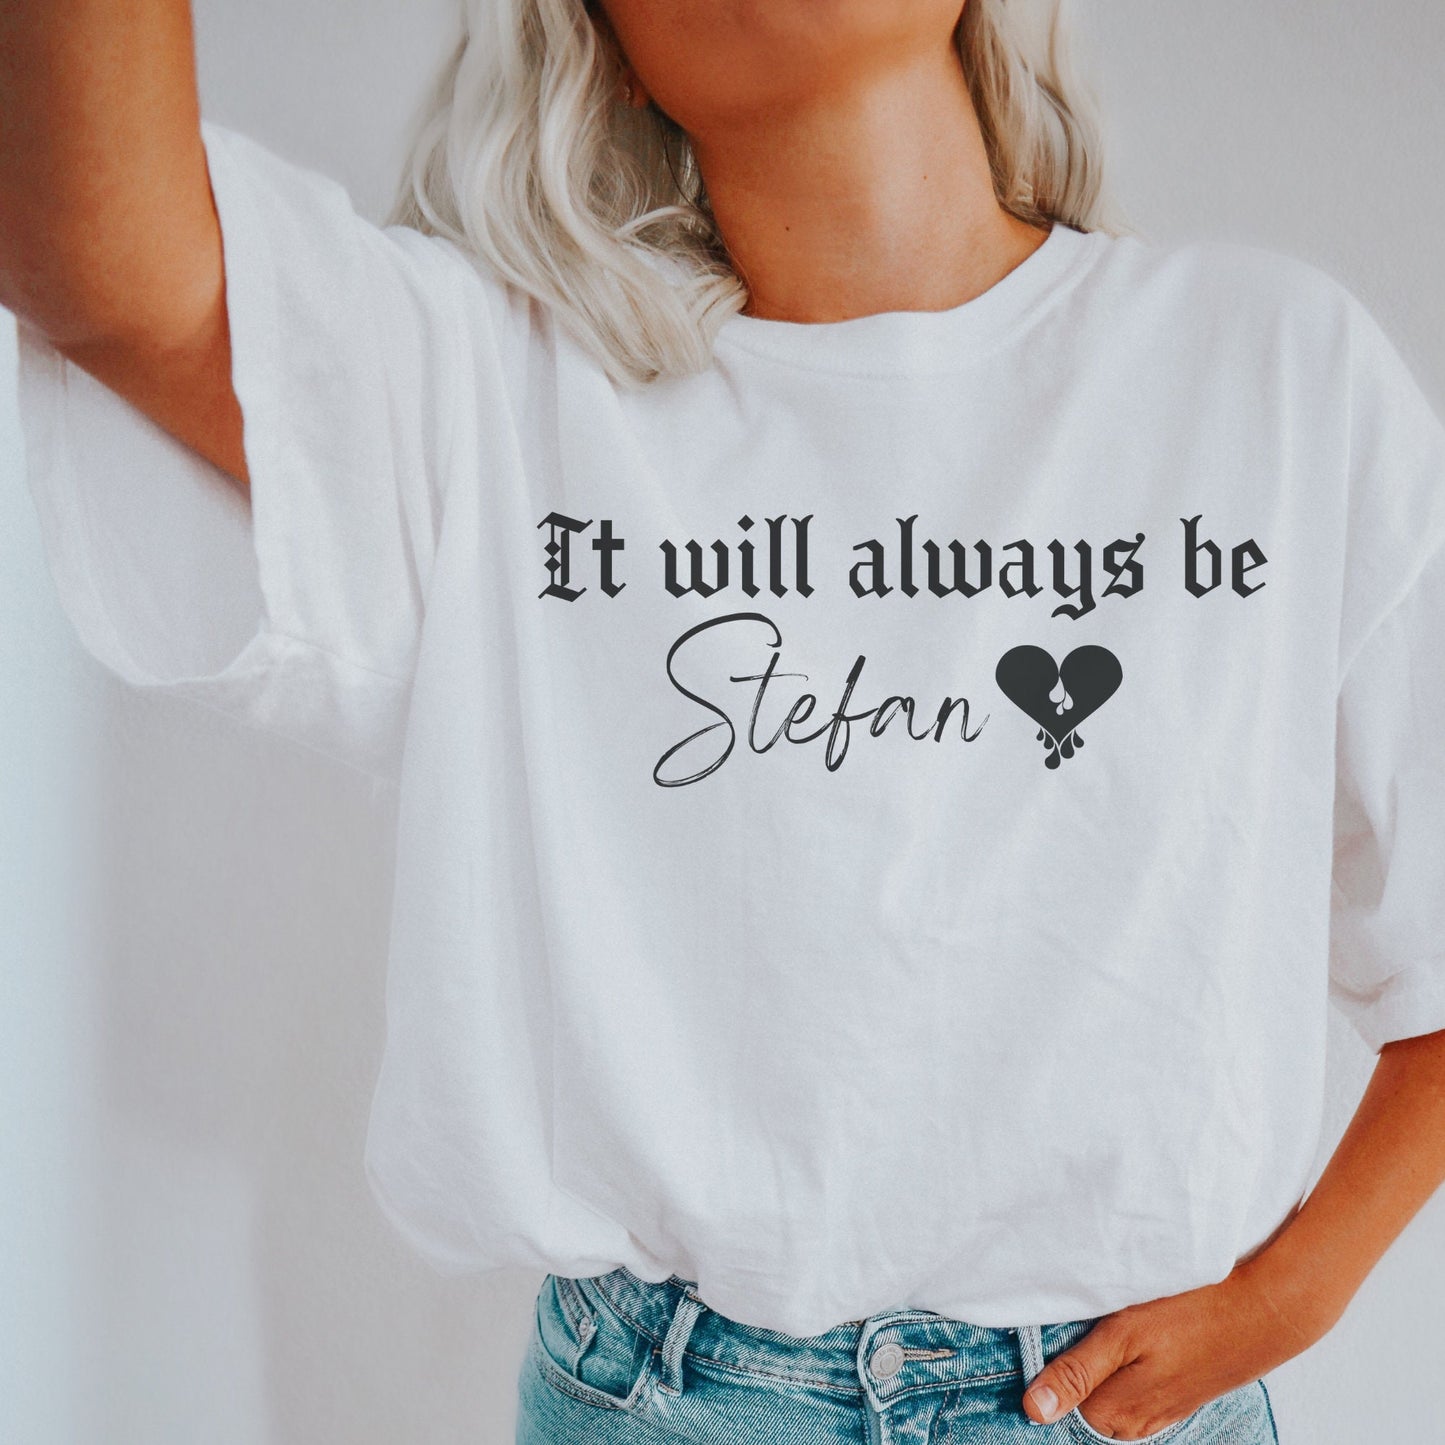 Stefan Salvatore shirt tvd shirt, TVD fan gift, vampire shirt, The Vampire Diaries shirt, TVD Fan, TVD merch, It will always be Stefan shirt